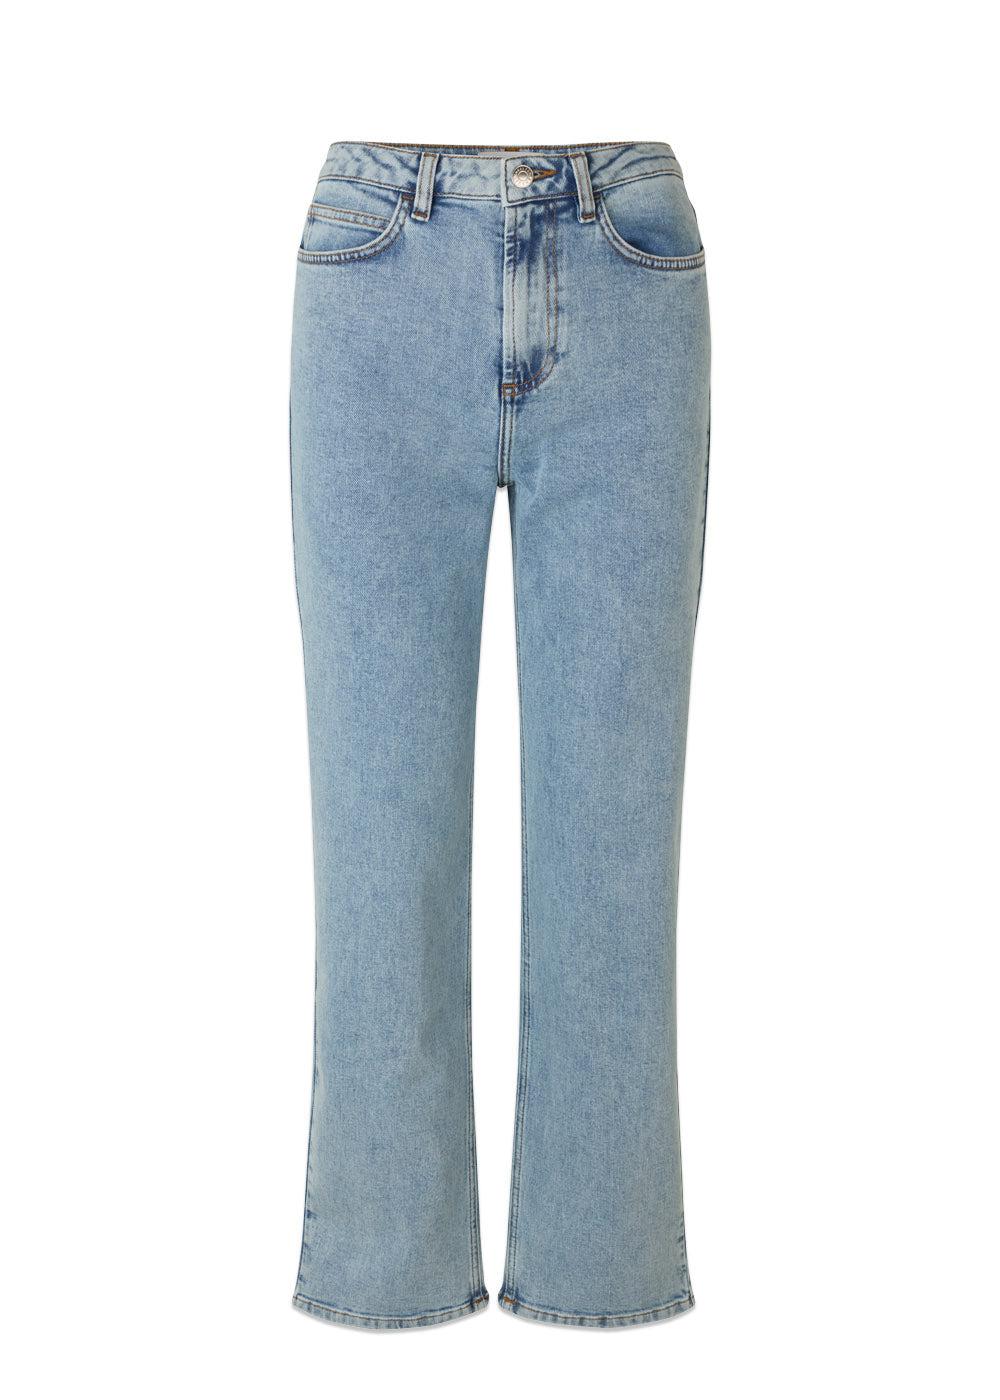 Modströms RubieMD jeans - Light Blue. Køb jeans her.